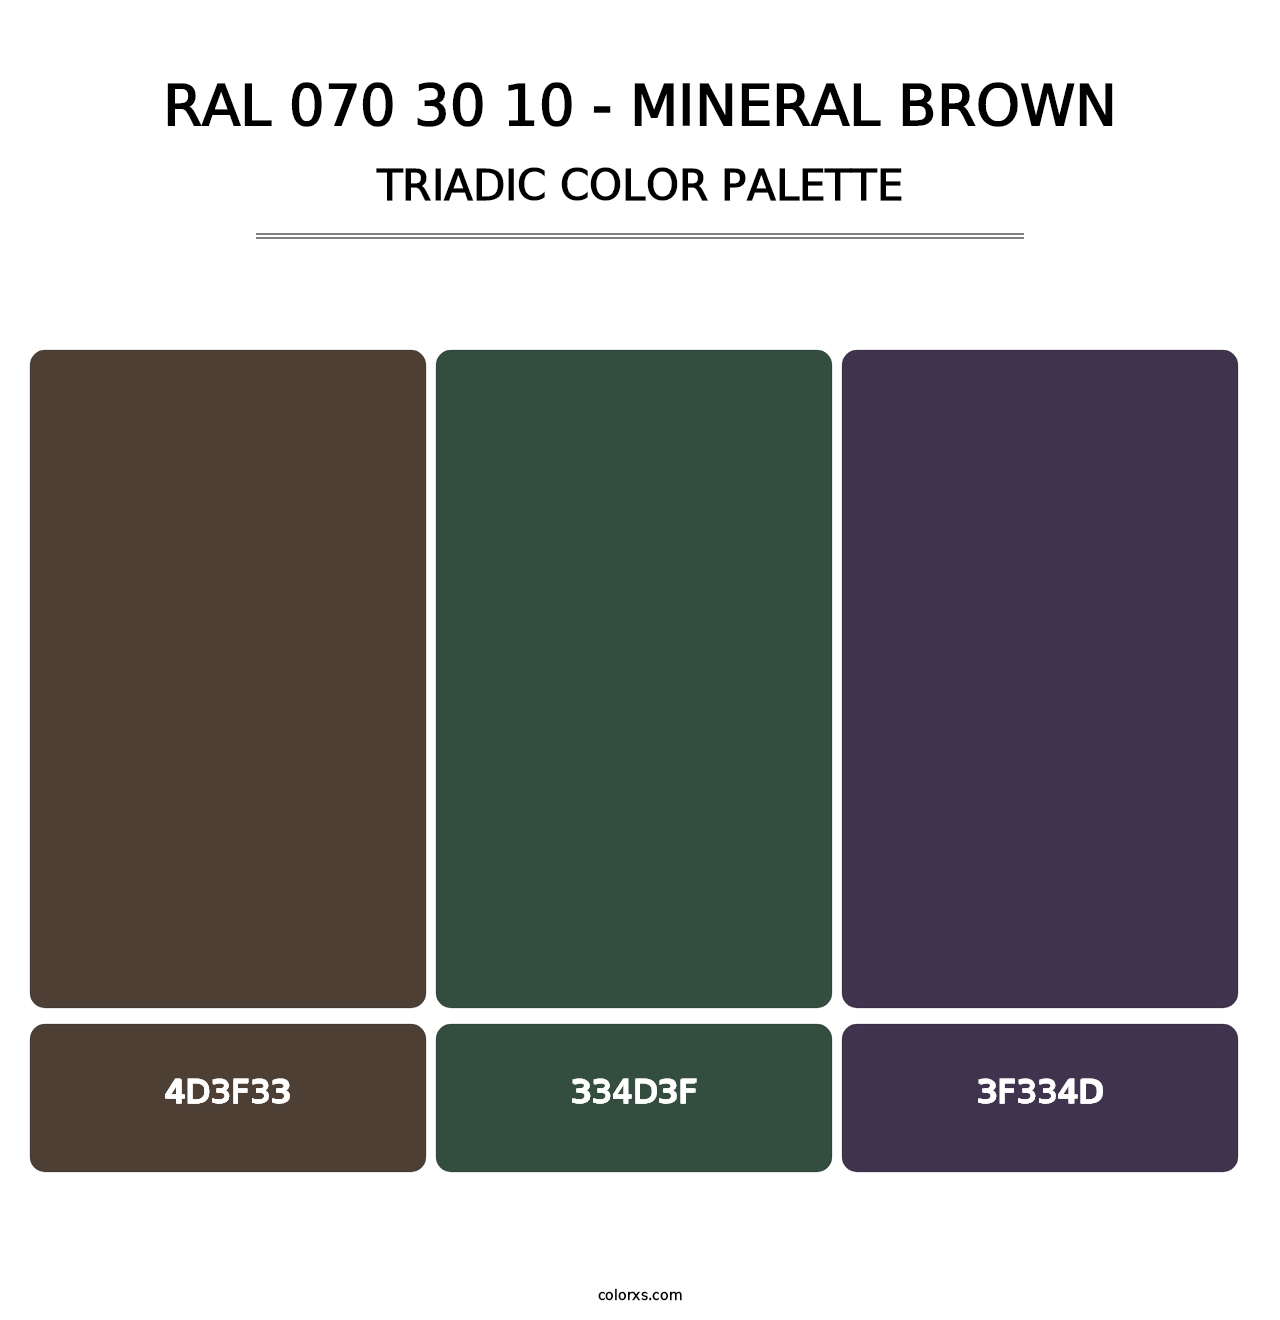 RAL 070 30 10 - Mineral Brown - Triadic Color Palette